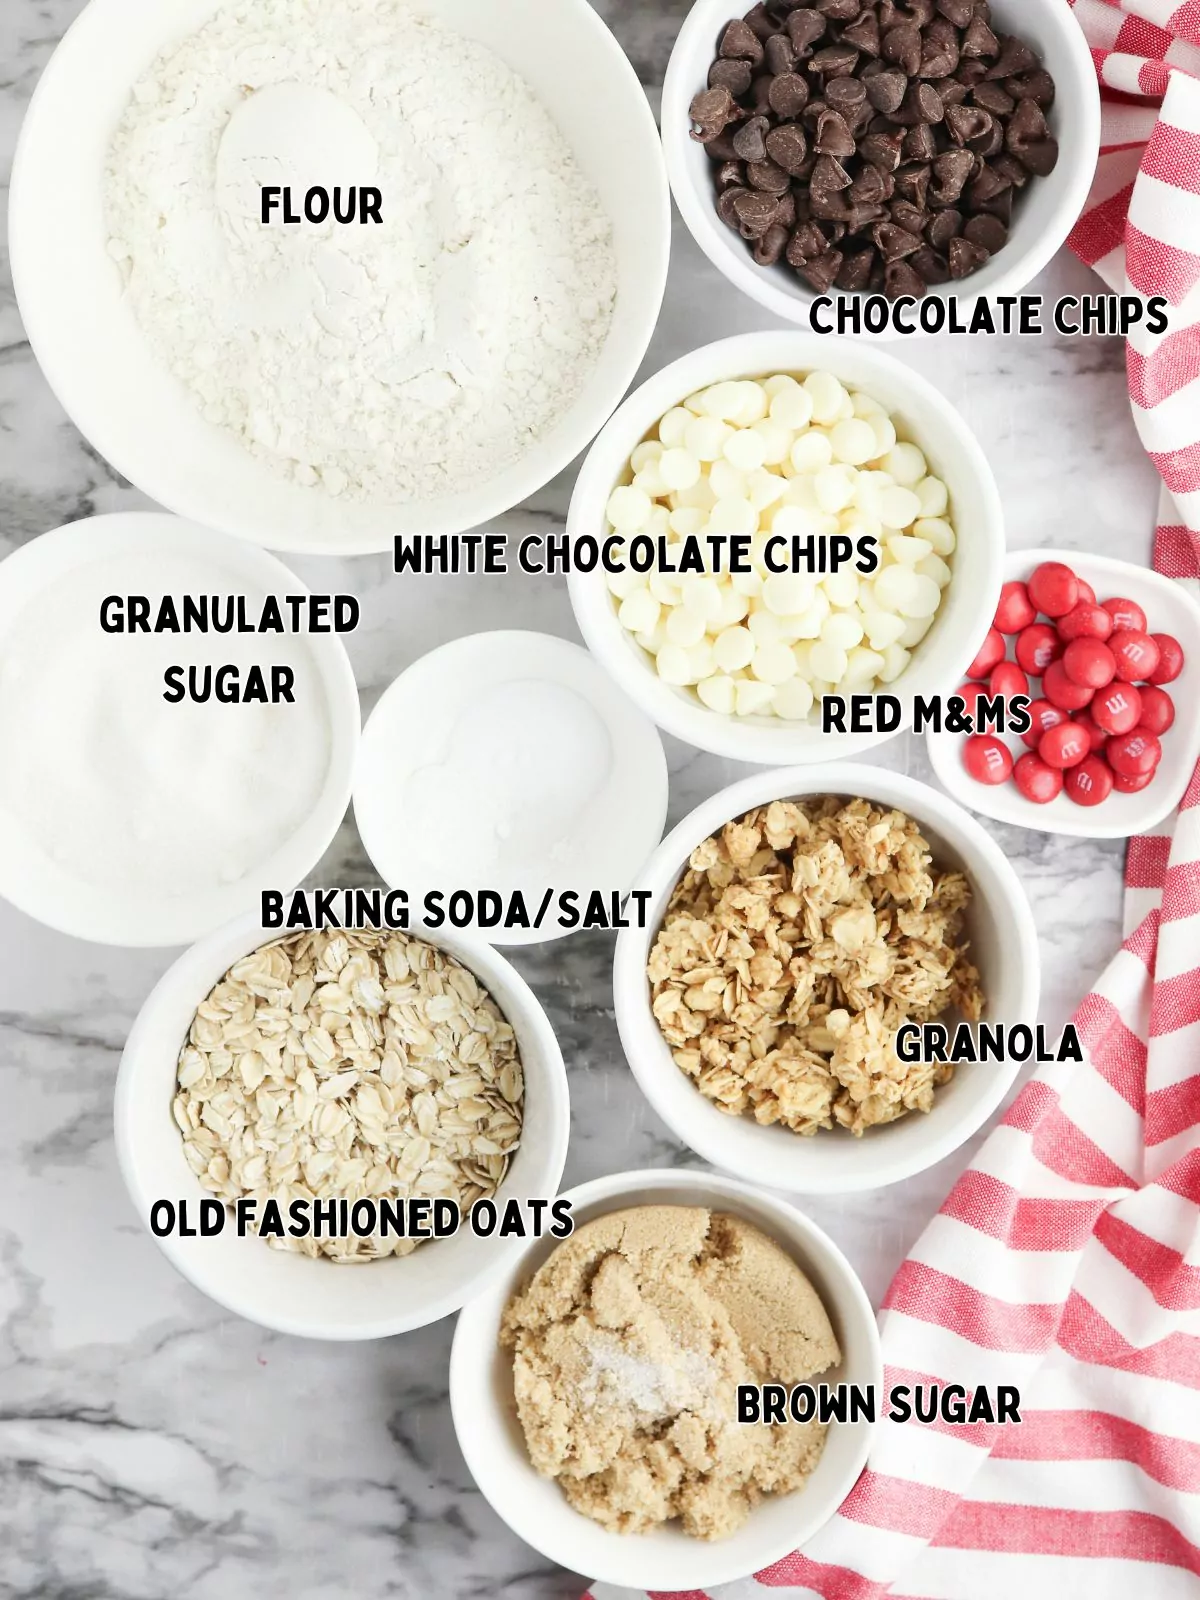 Ingredients for Reindeer cookies in a jar.